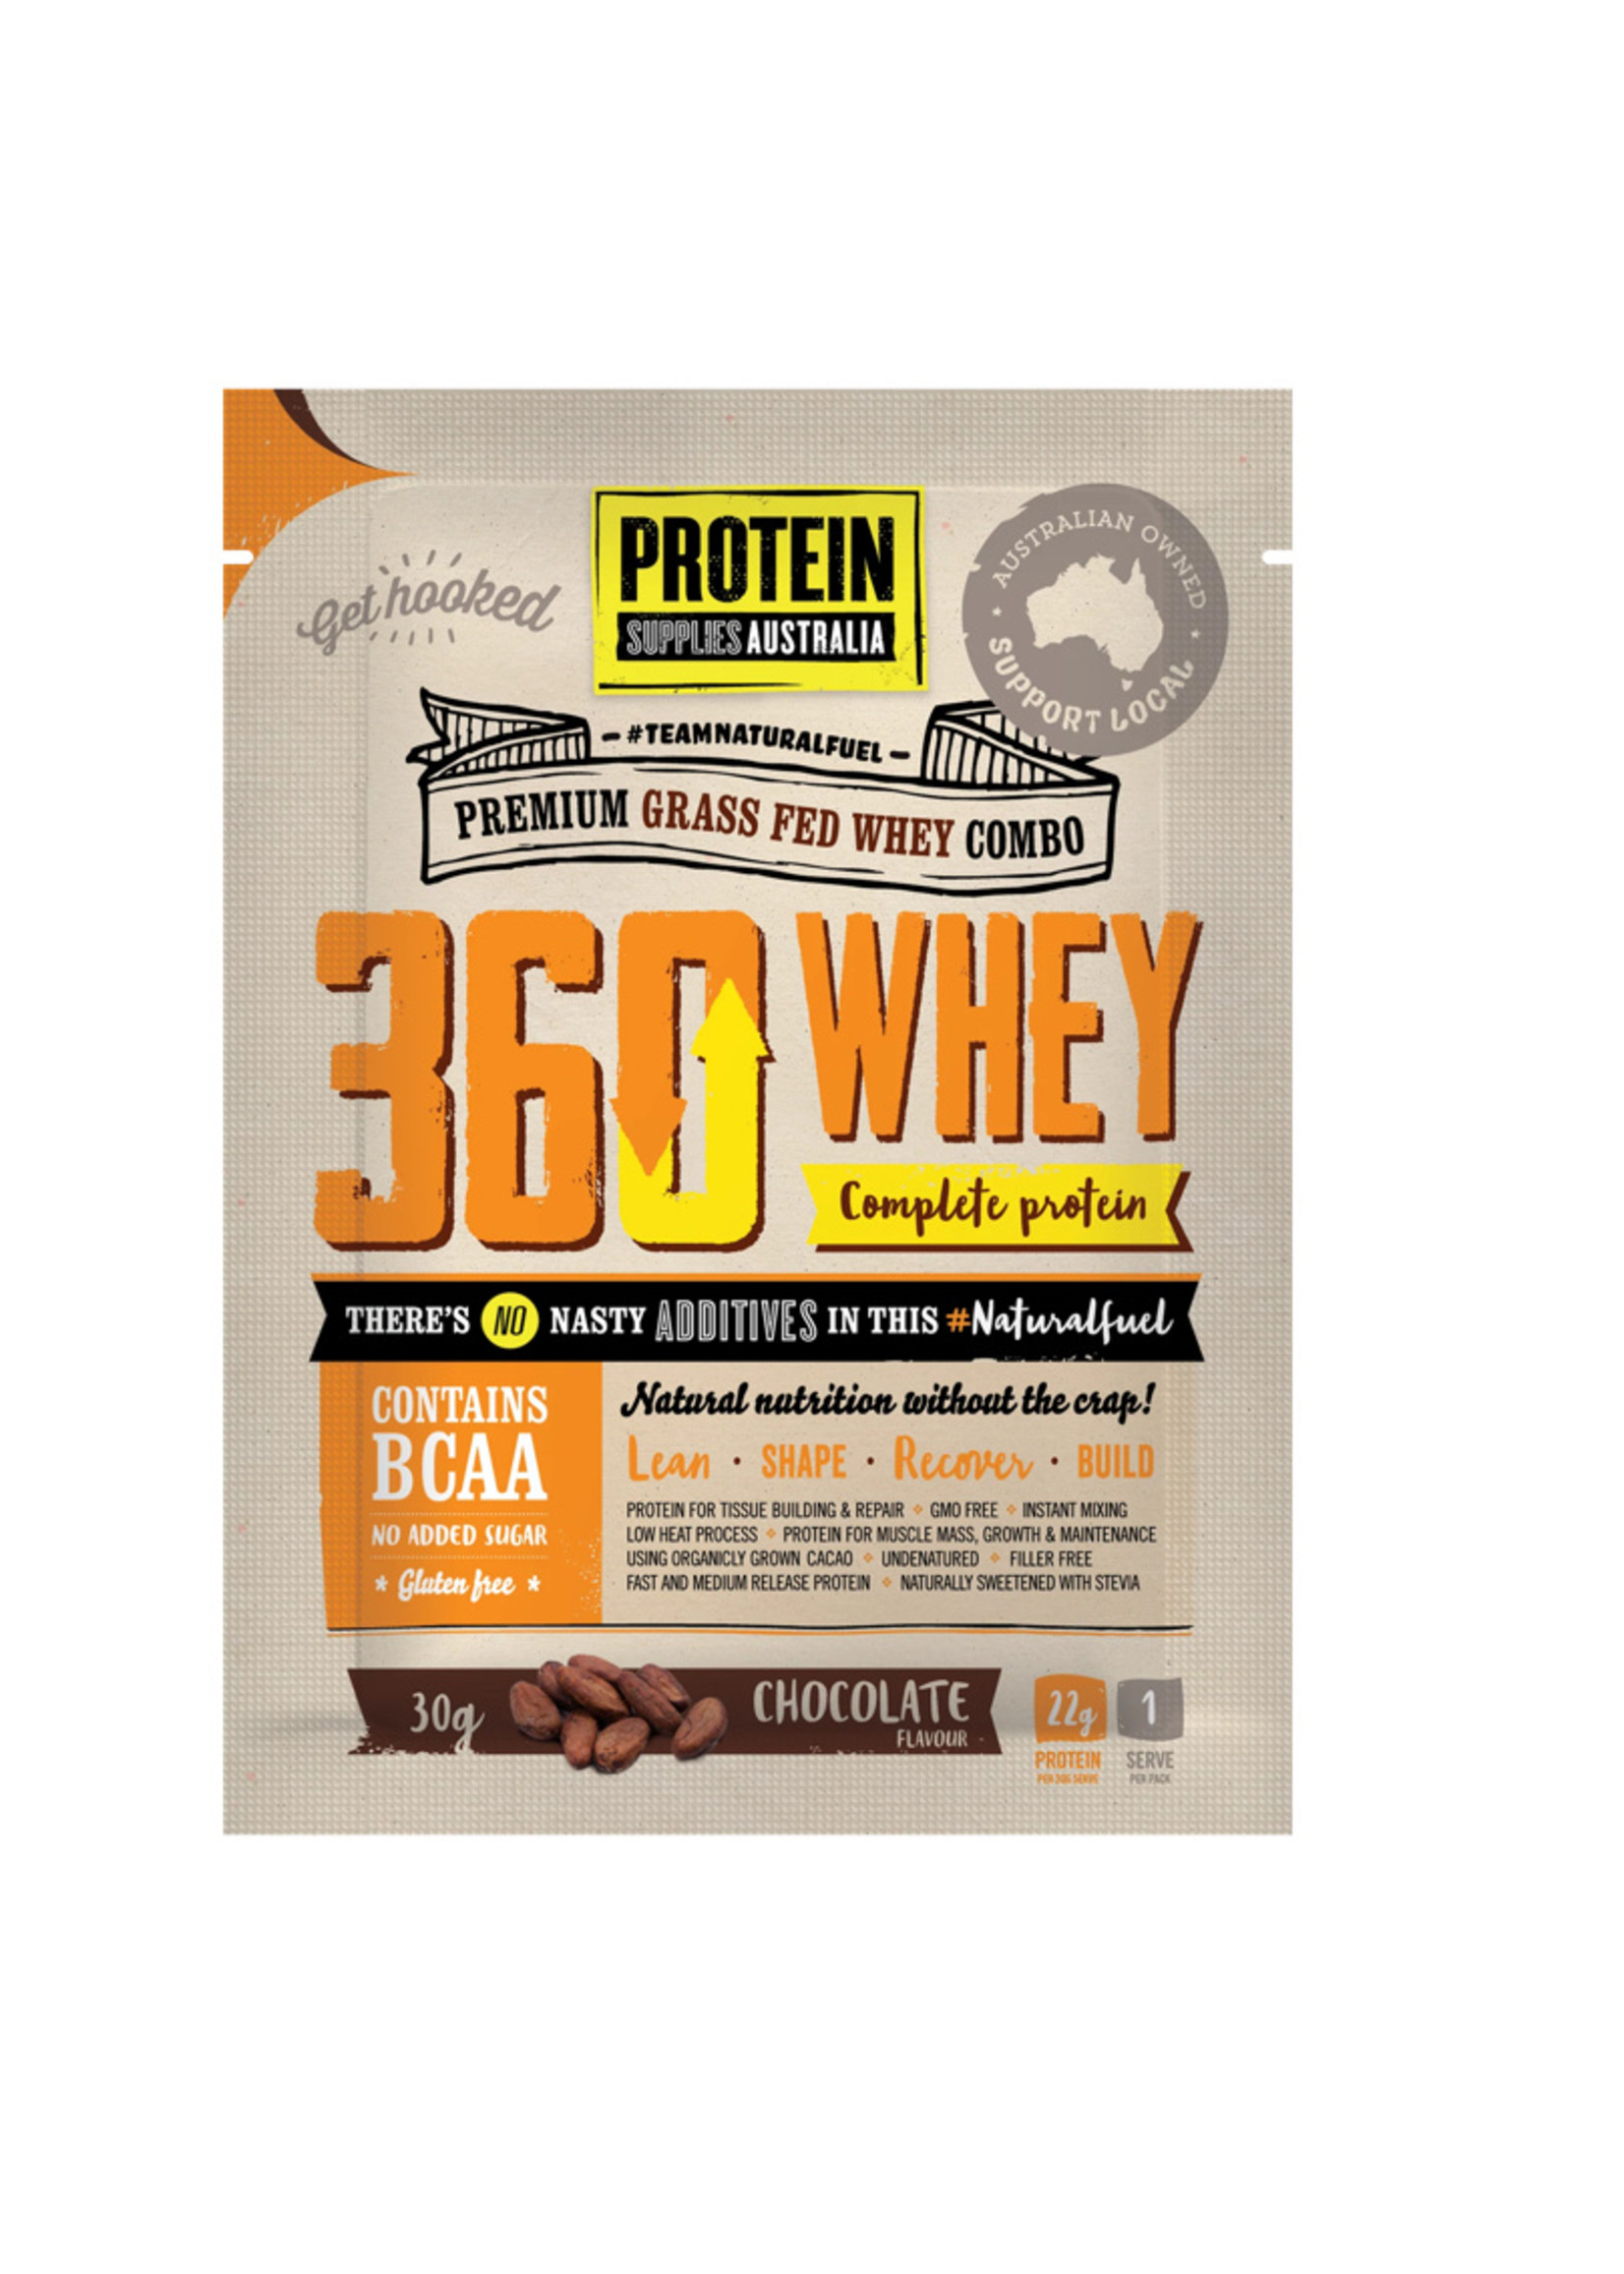 Prorein Supplies Australia Protein Supplies Australia 360 Whey (WPI=WPC Combo ) Chocolate 1kg